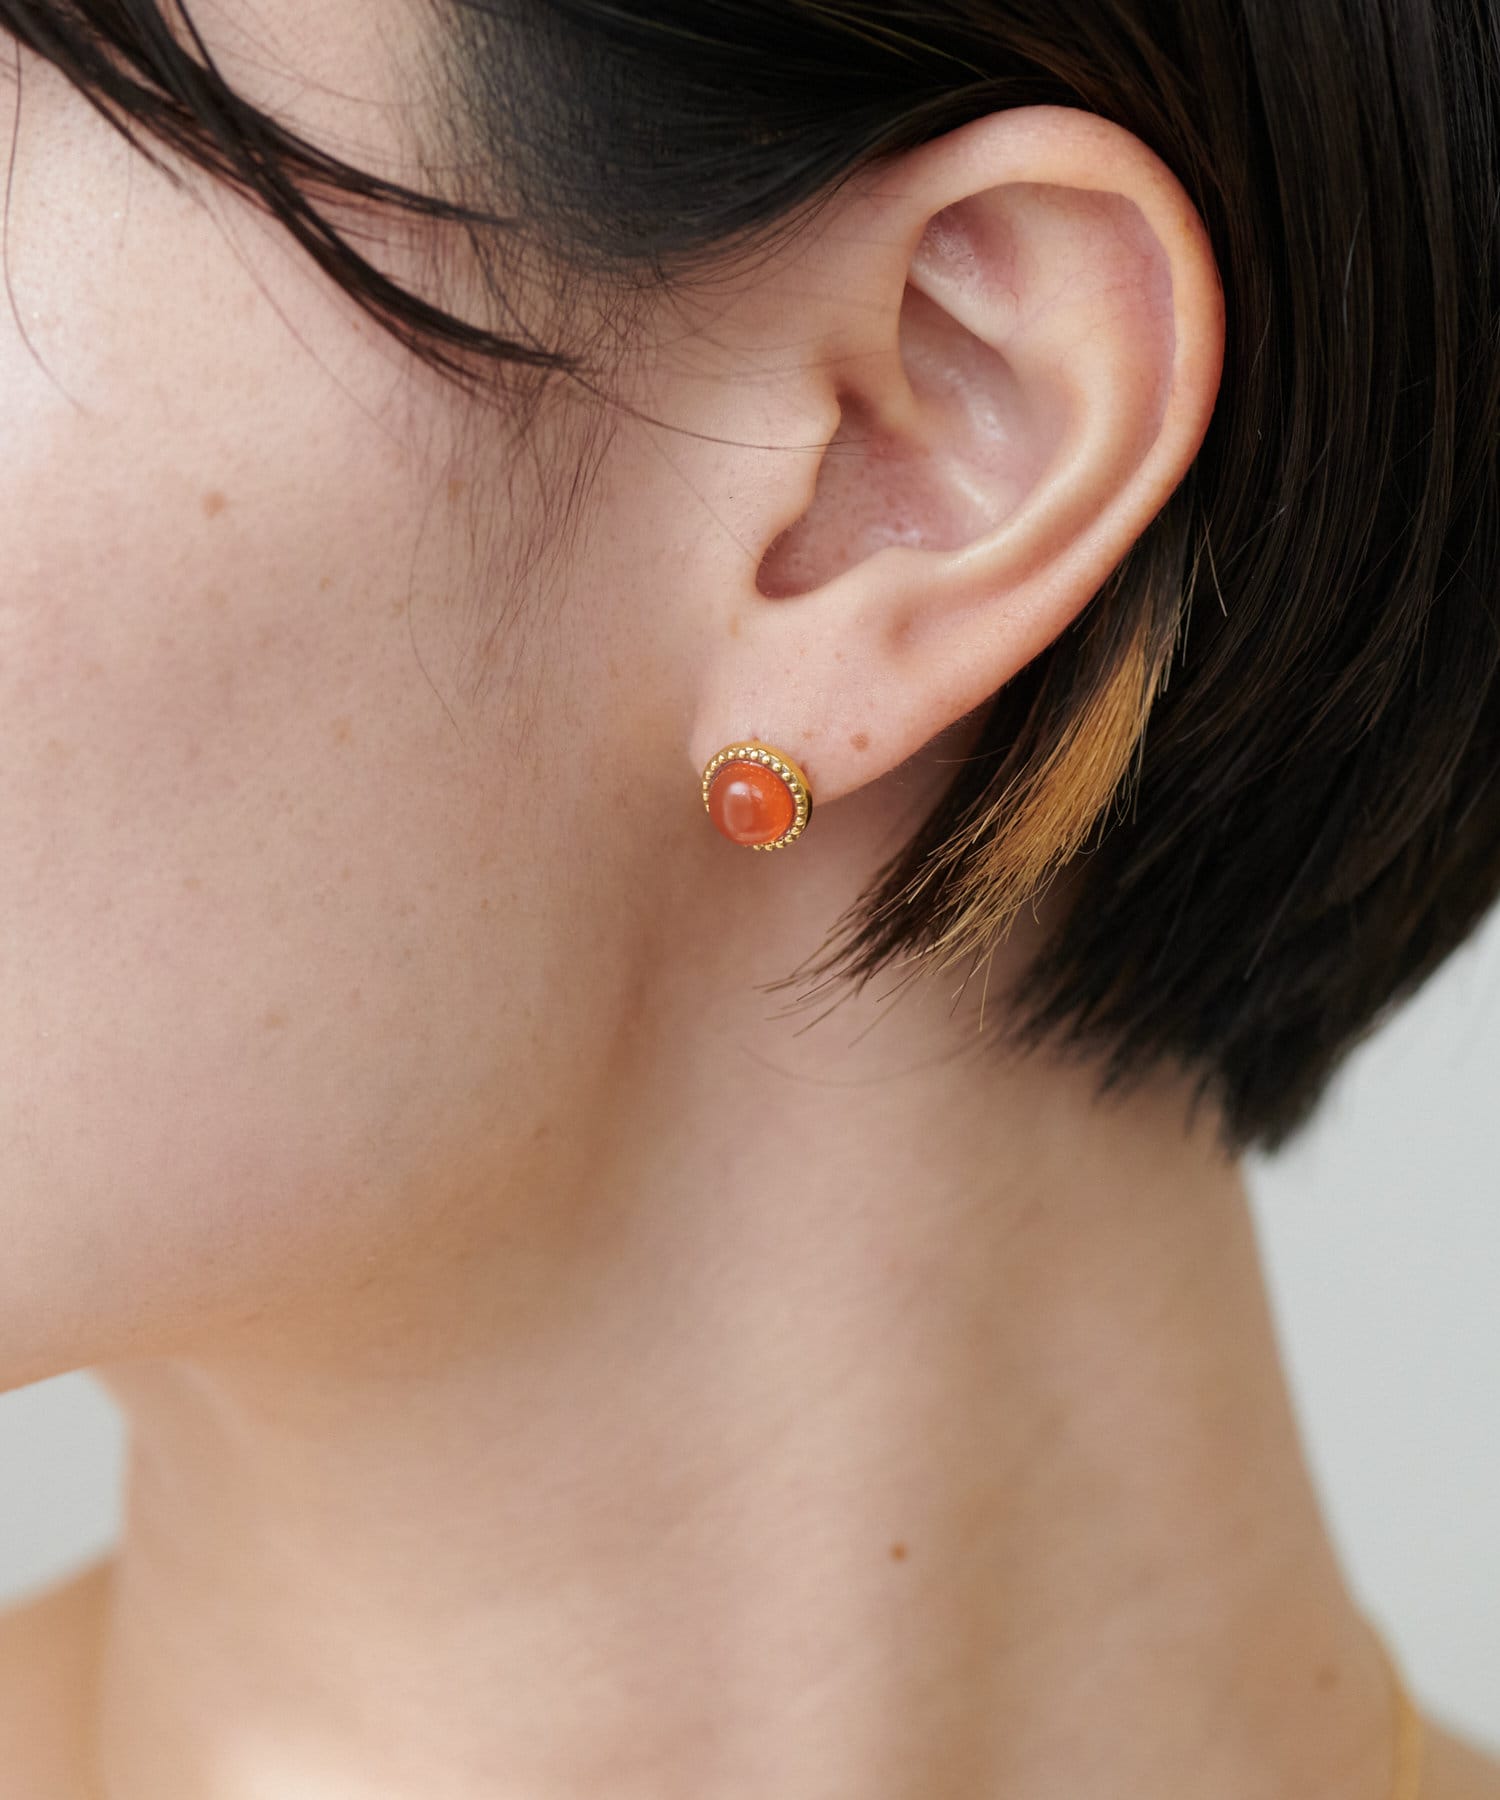 Raisin earring(metallic)